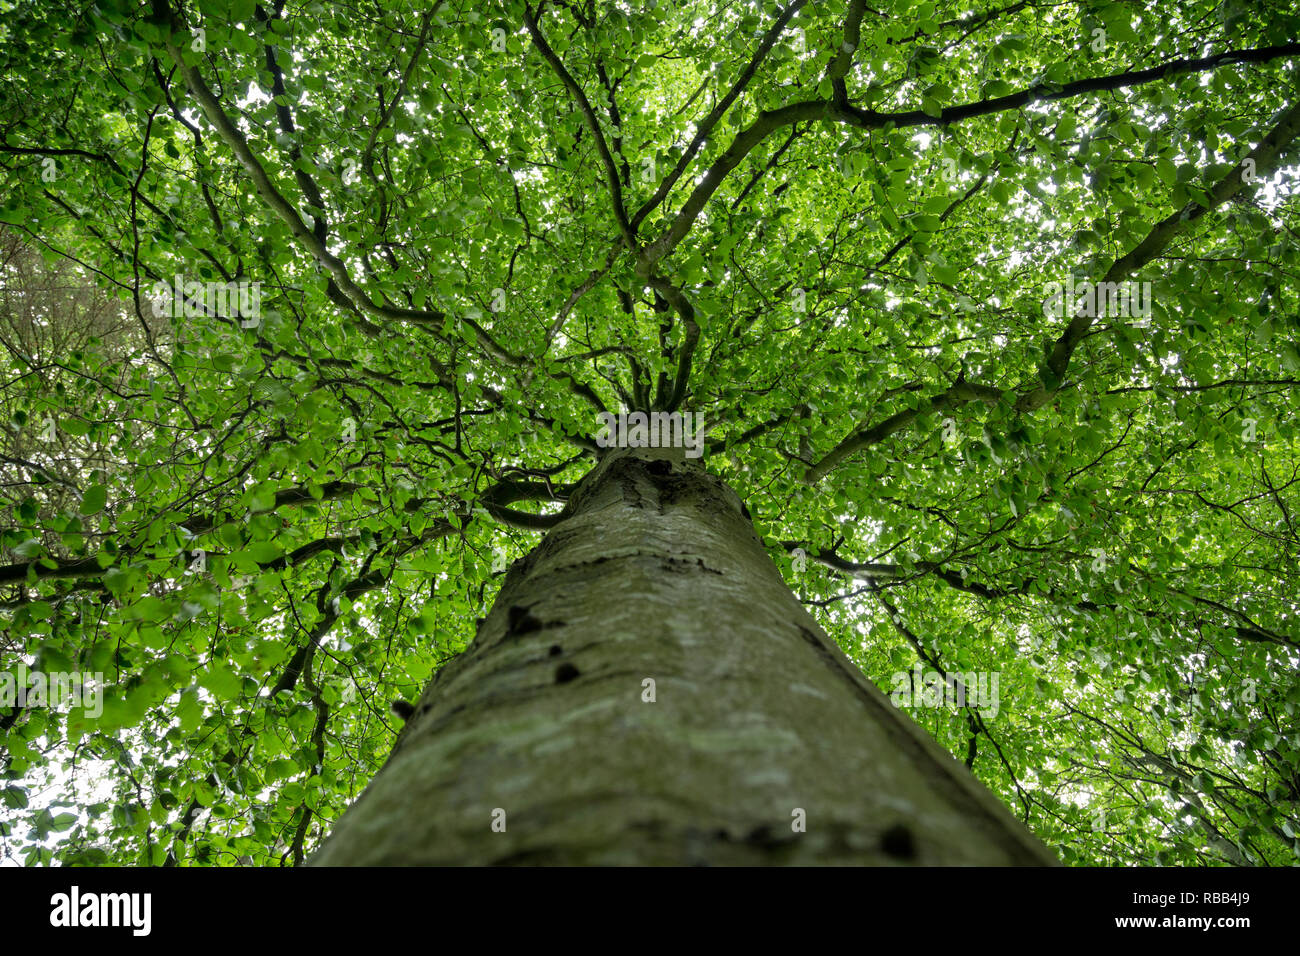 Feuilles vertes saines sur un couvert d'arbres. Banque D'Images